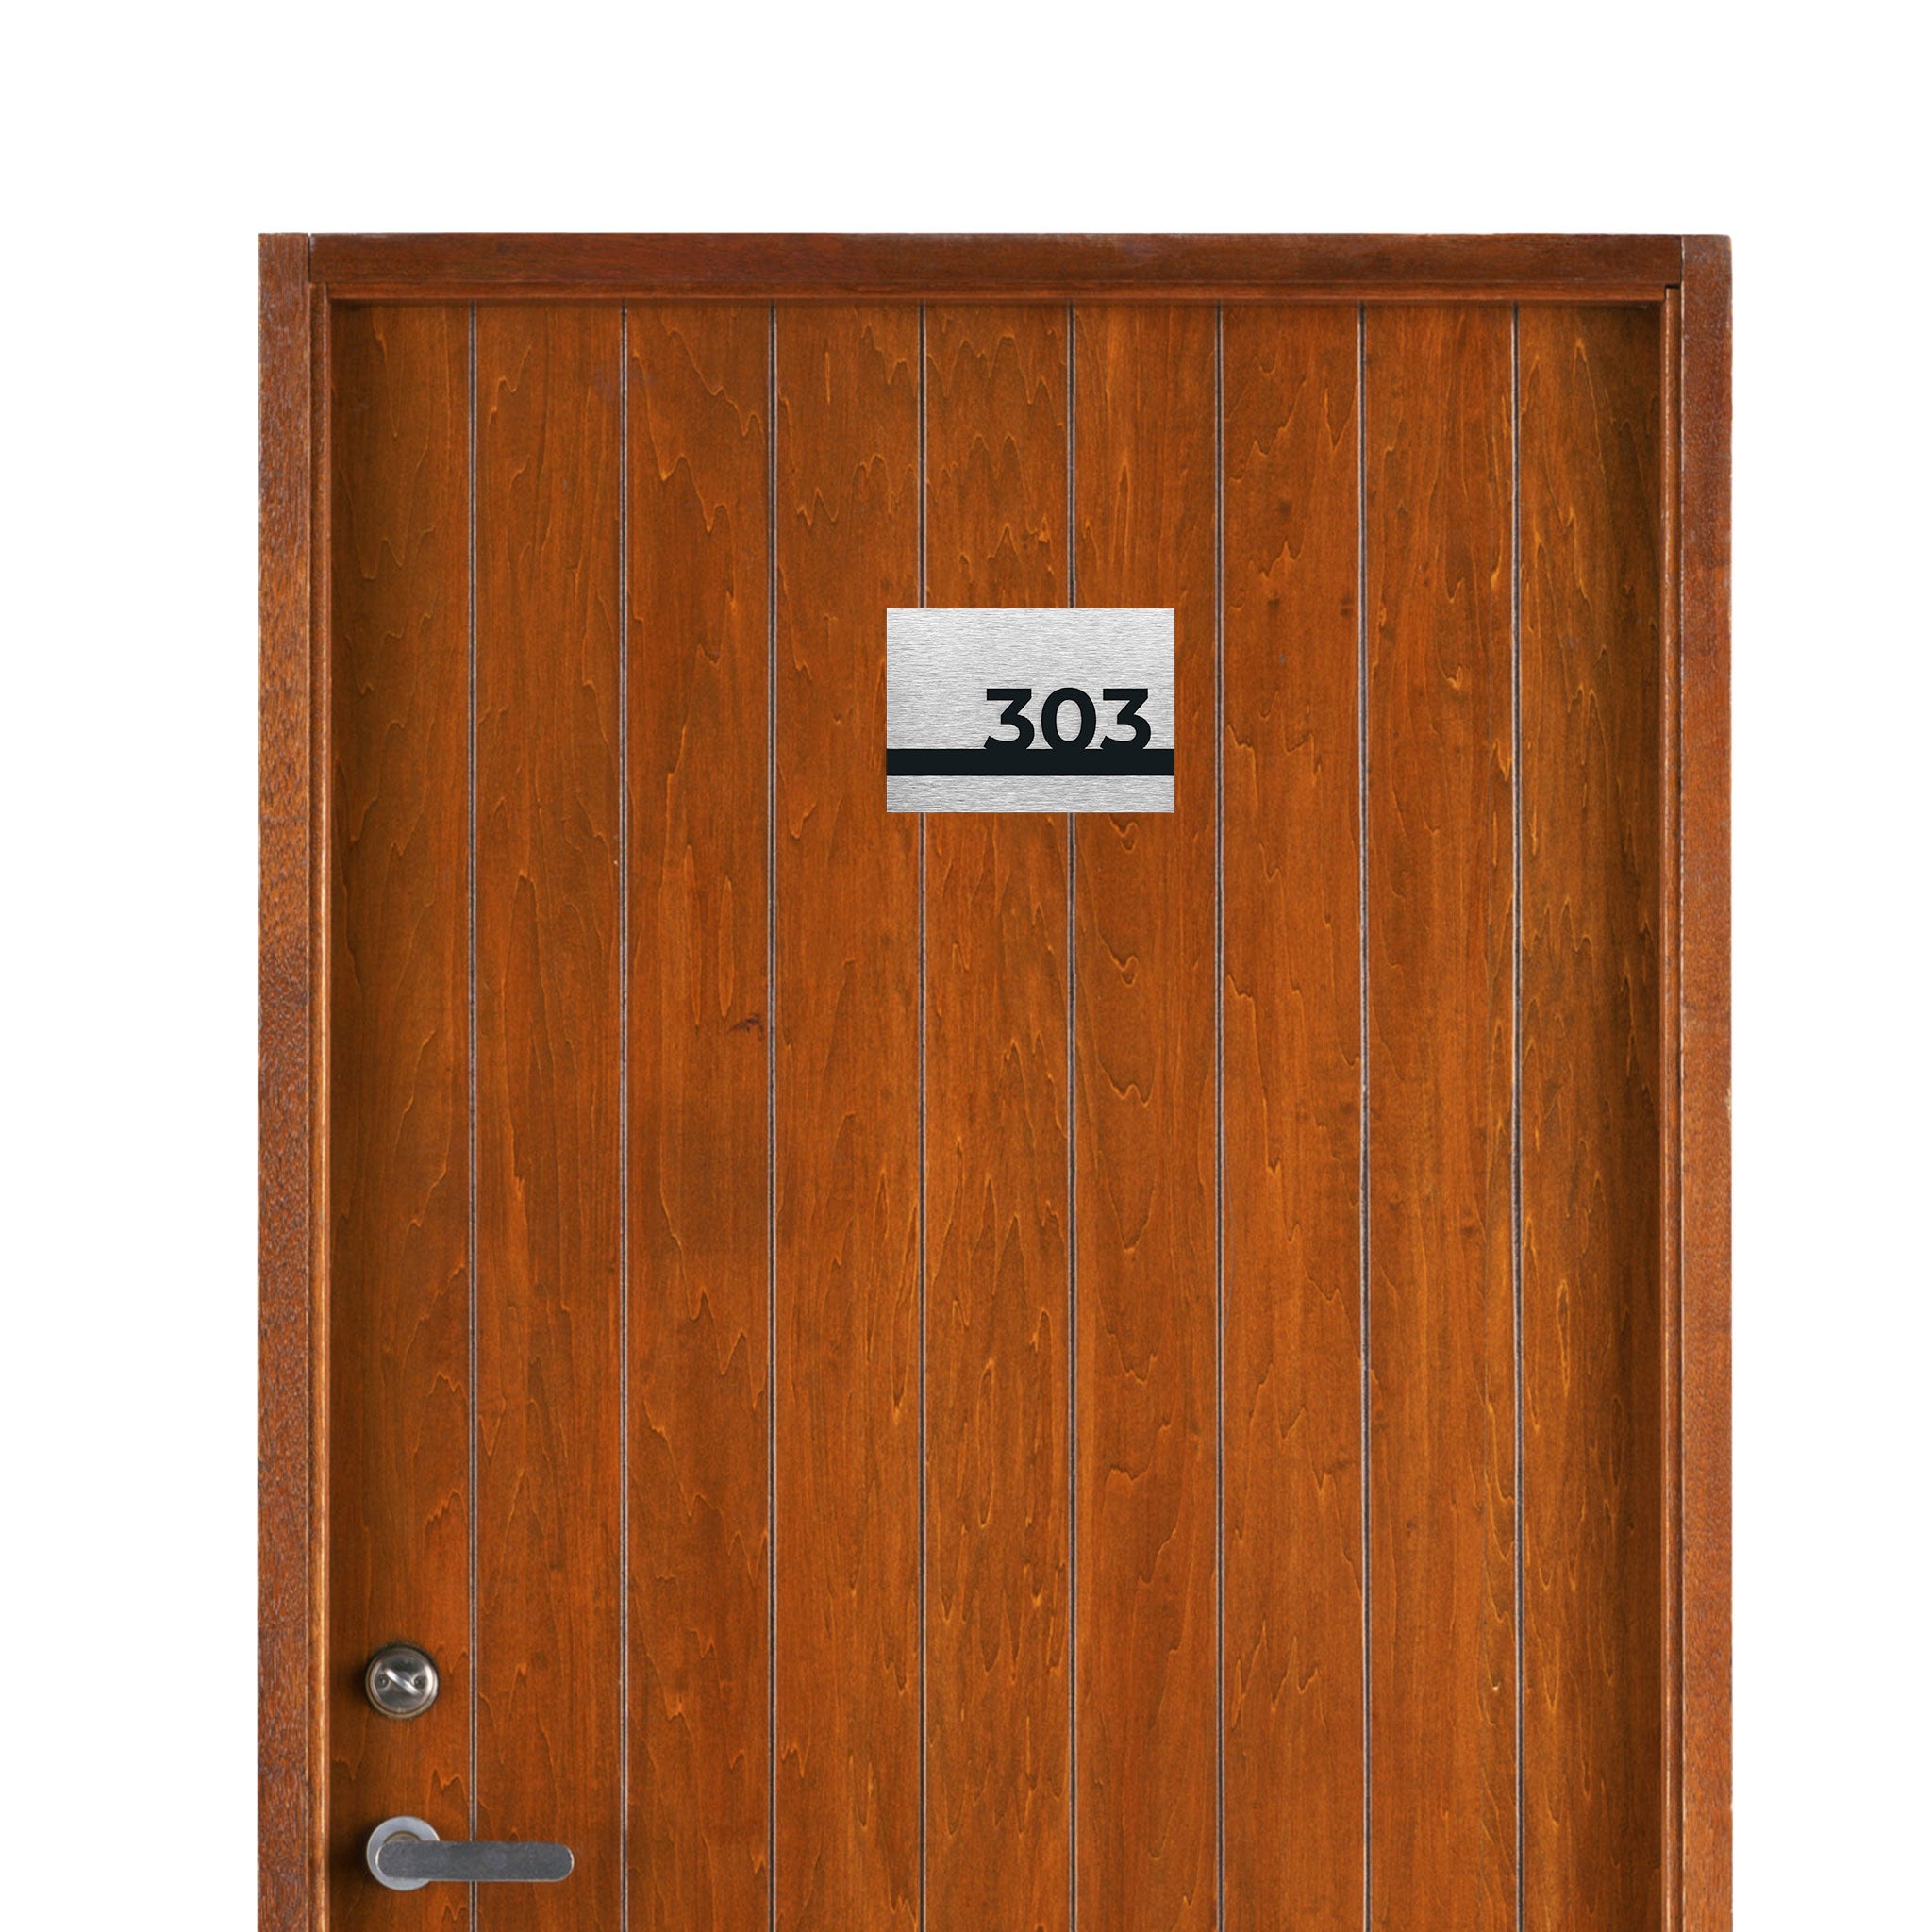 HOTEL DOOR SIGNS - ALUMADESIGNCO Door Signs - Custom Door Signs For Business & Office